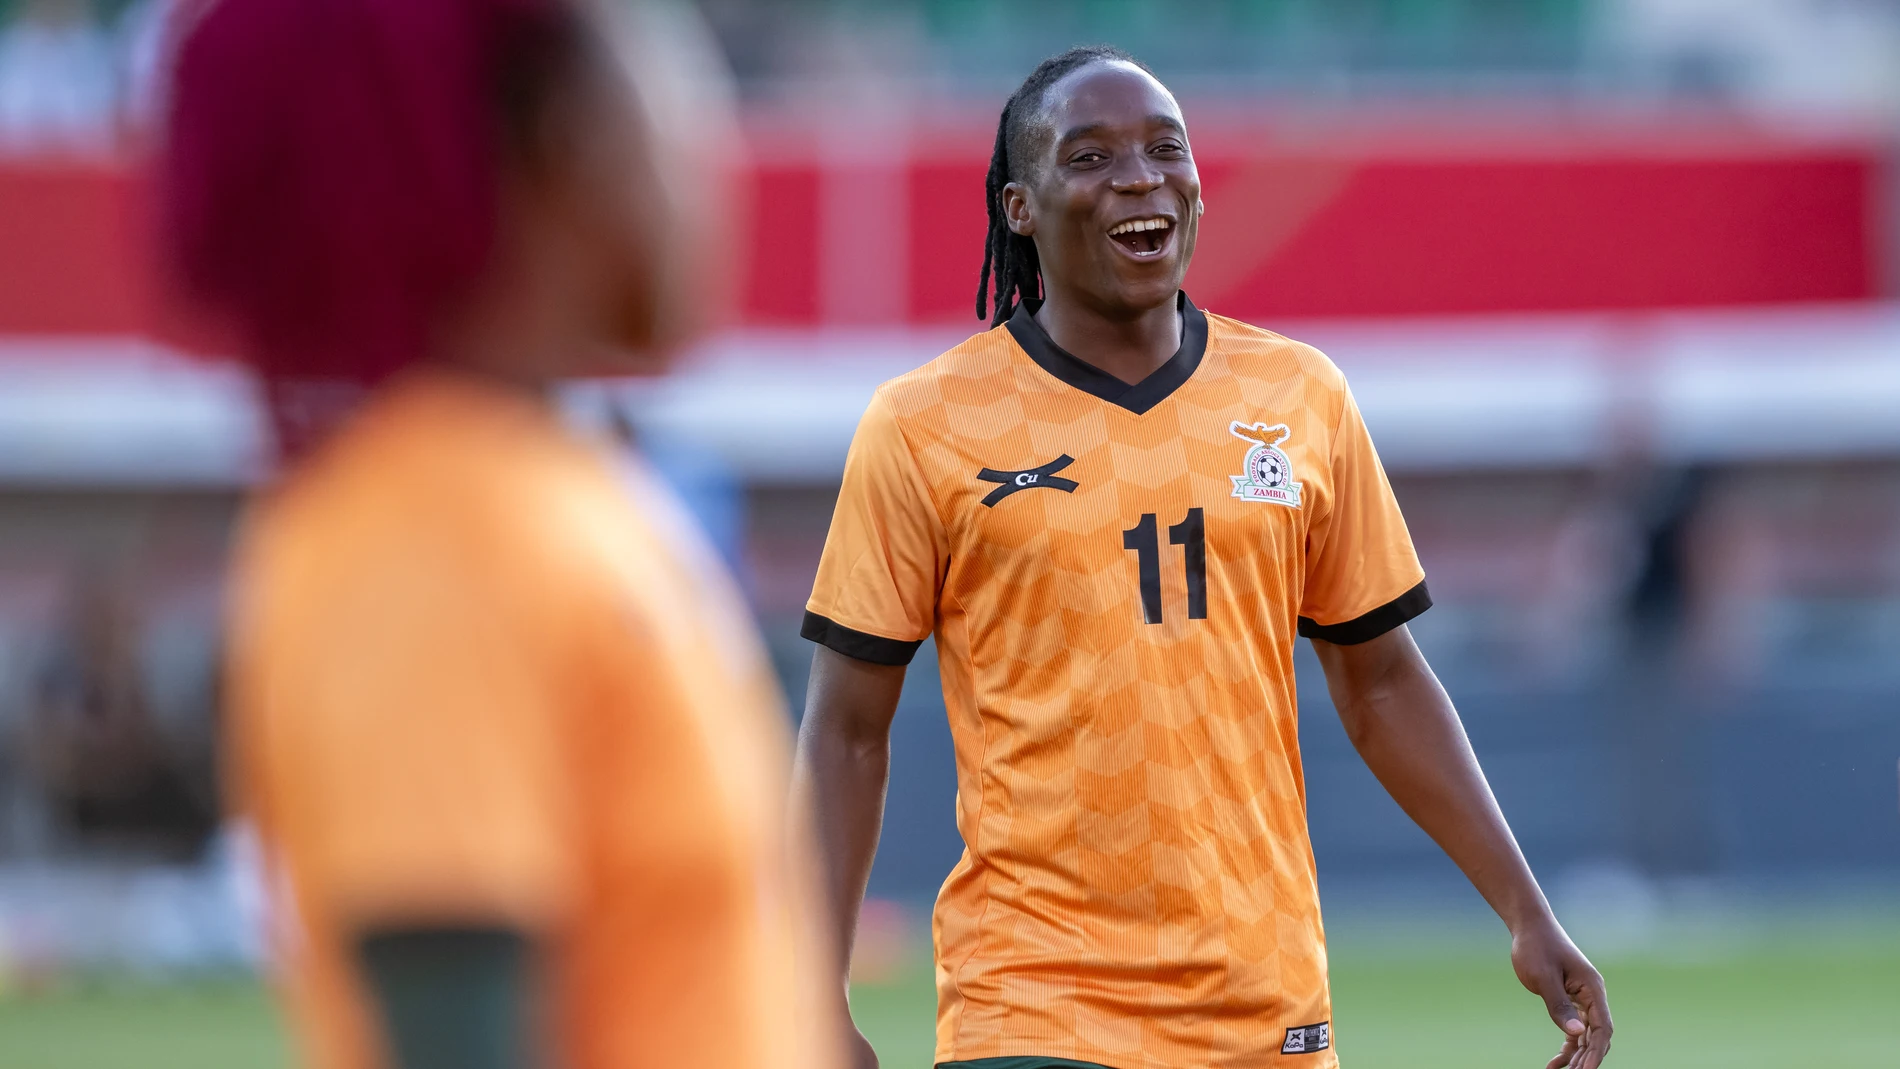 Barbra Banda durante el amistoso internacional femenino entre Alemania y Zambia